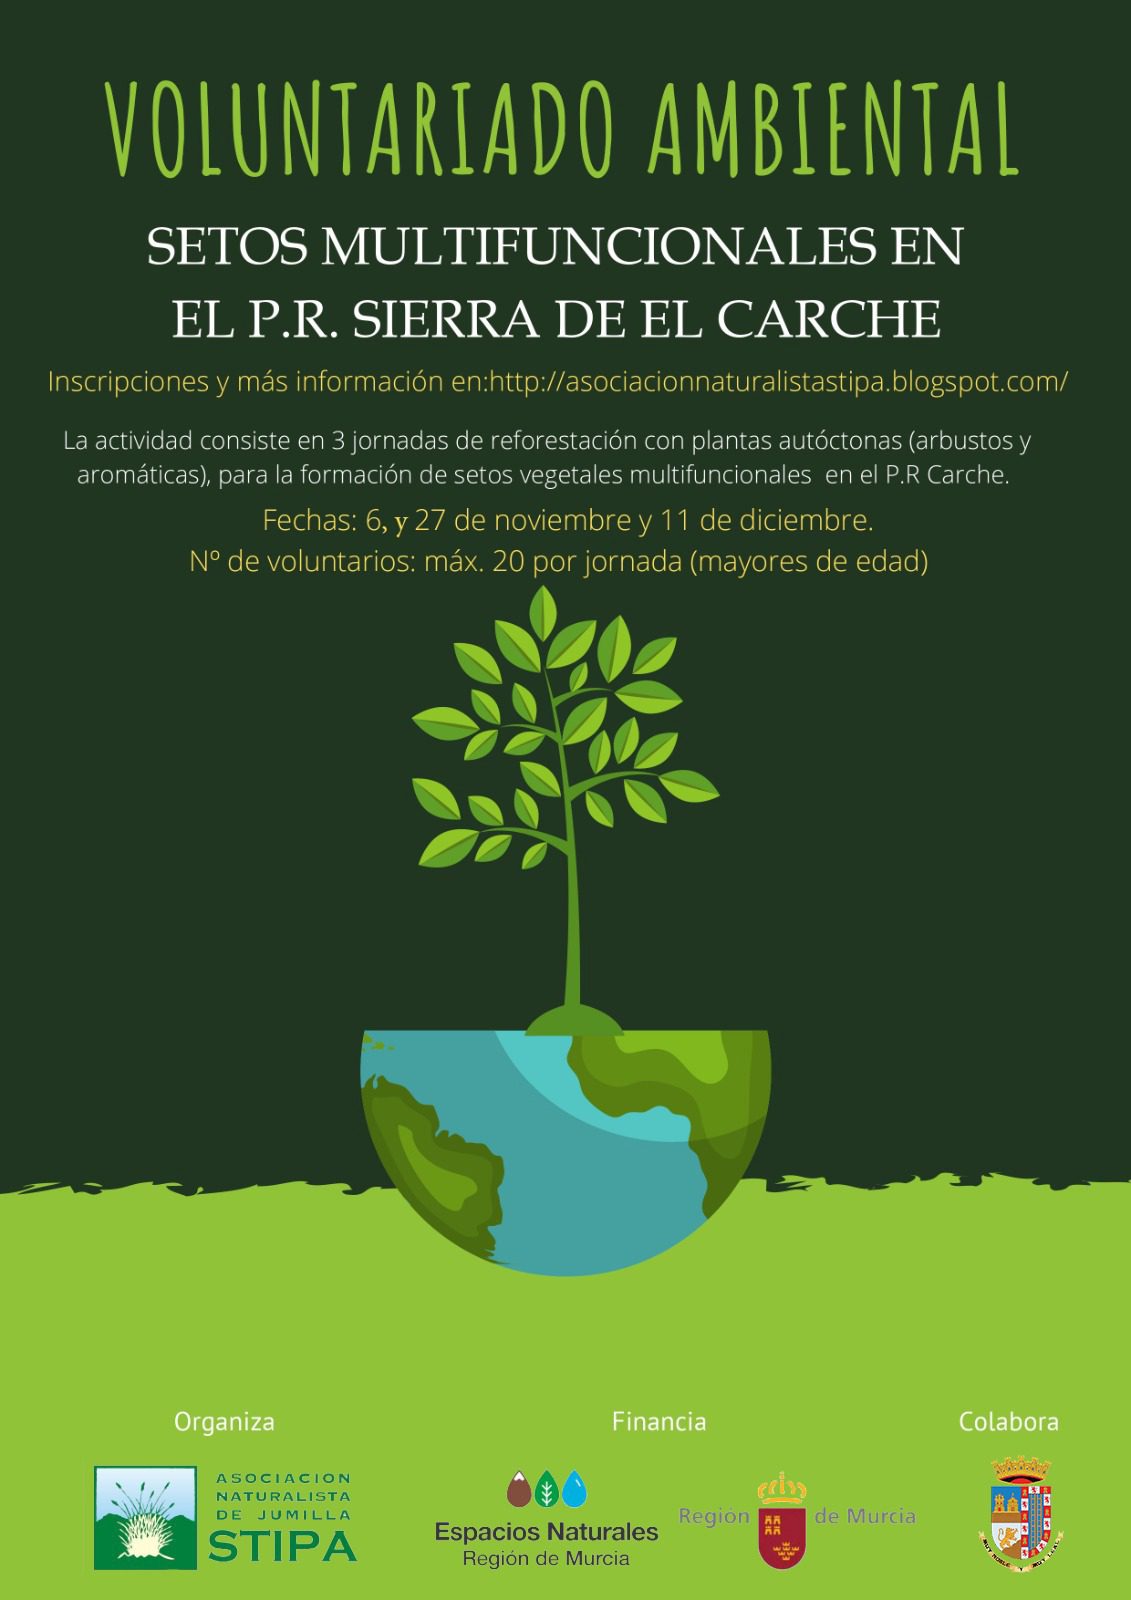 Stipa organiza un voluntariado ambiental para reforestar la Sierra del Carche